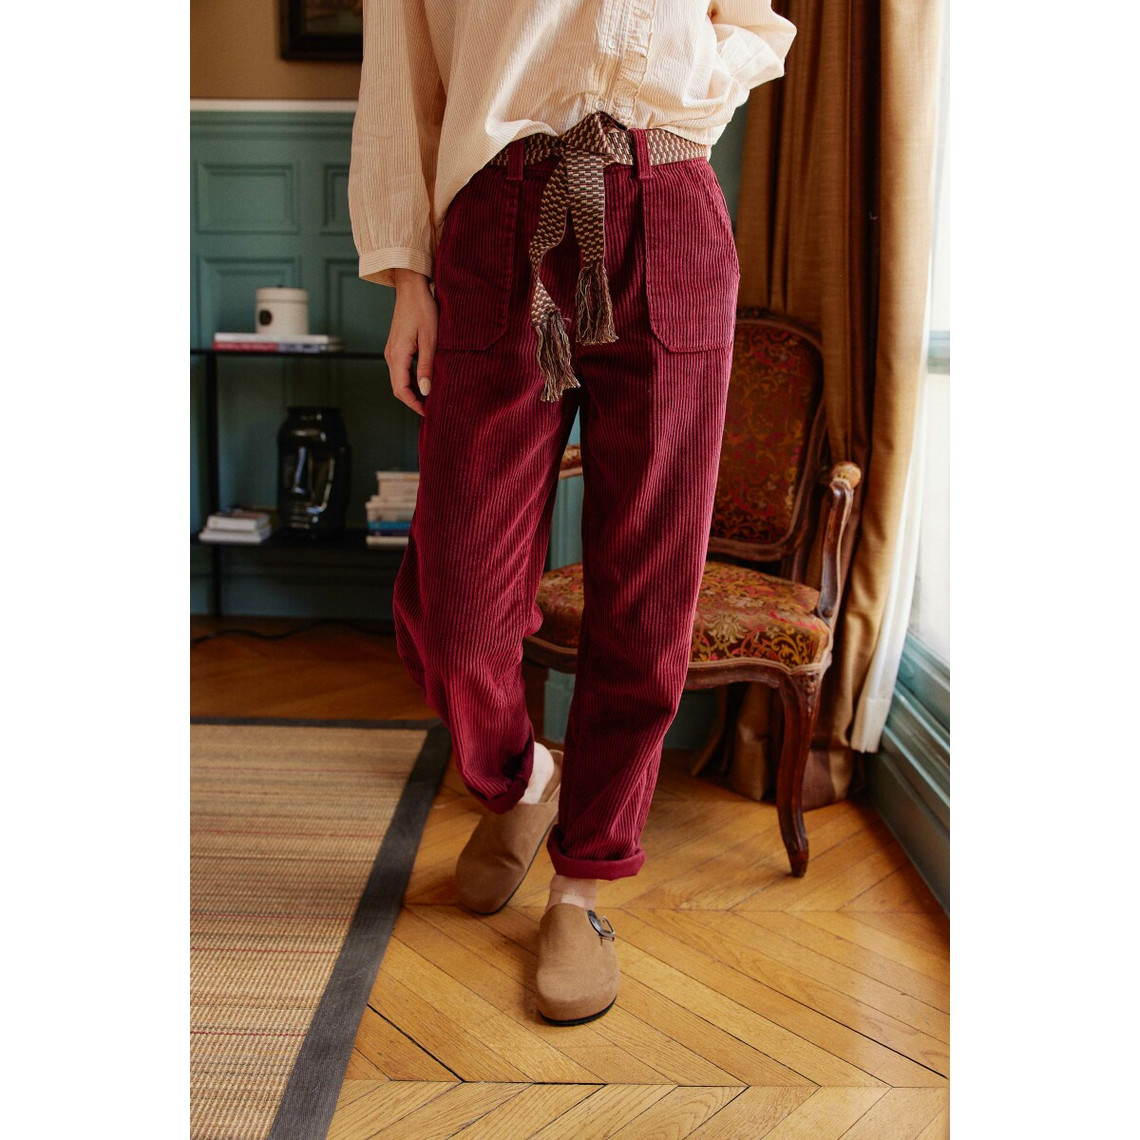 Pantalon MARISOL - Framboise Cuite bordeaux en coton